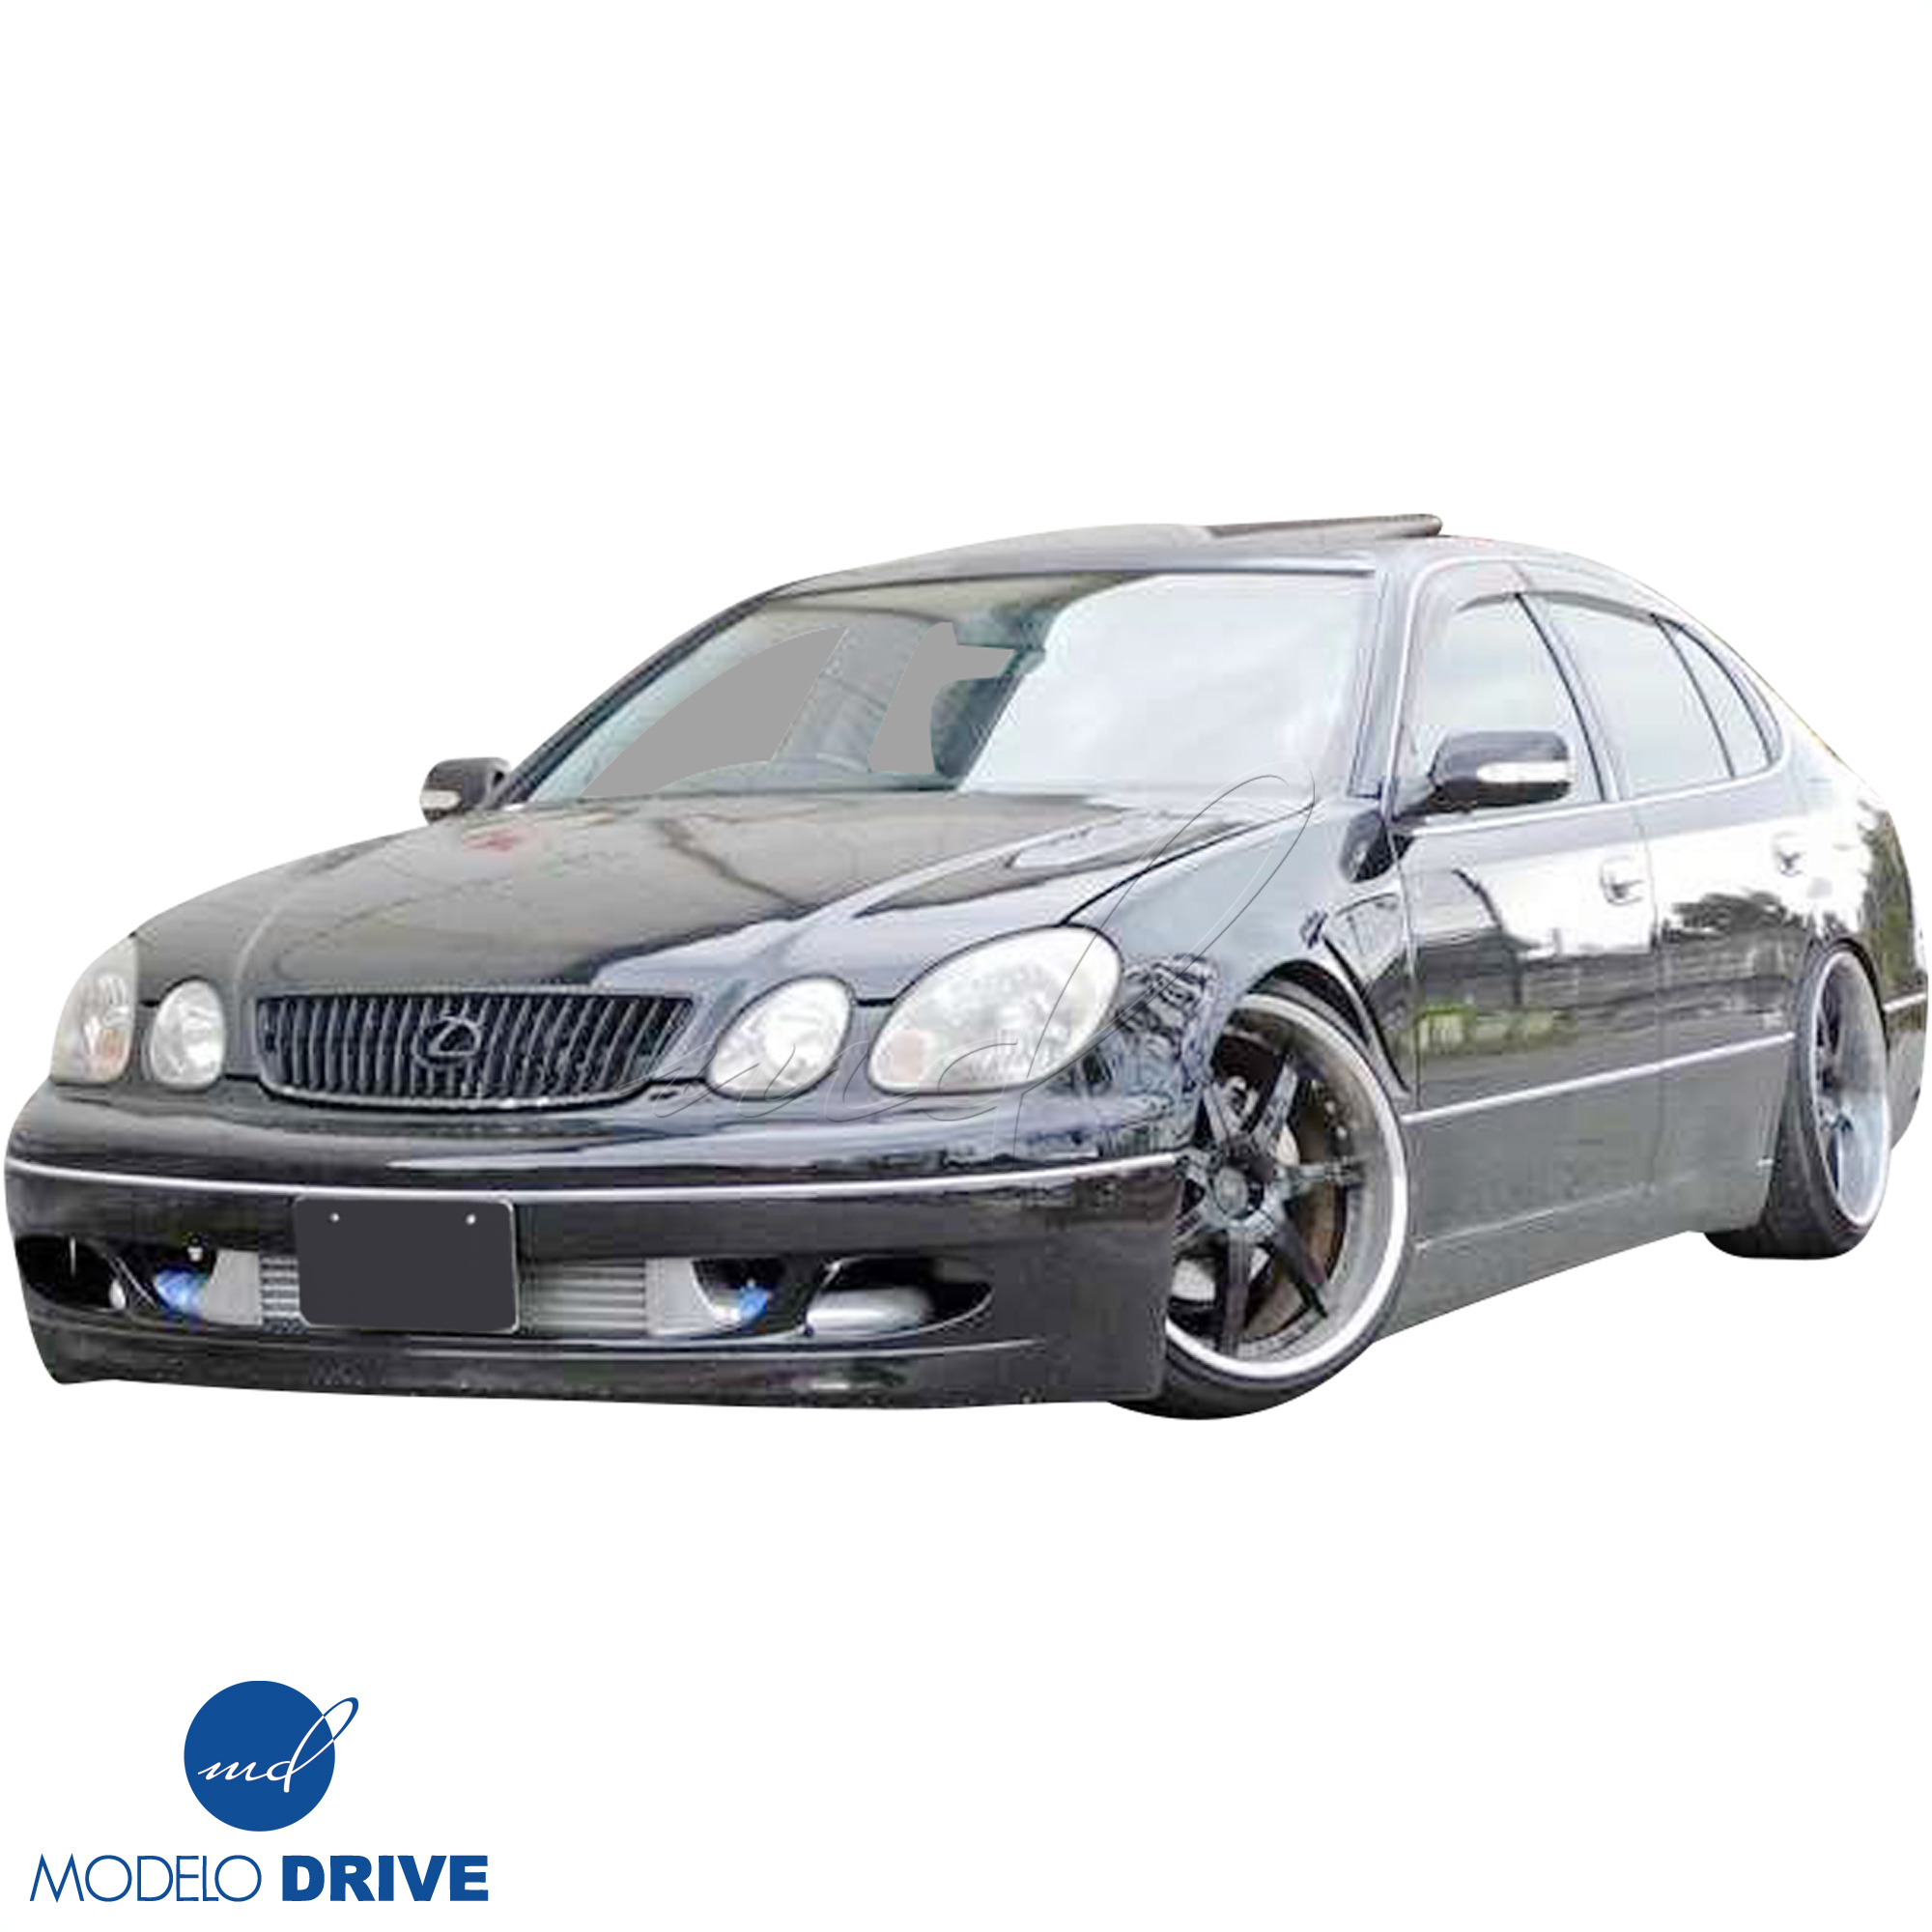 ModeloDrive FRP JUNT Front Bumper > Lexus GS Series GS400 GS300 1998-2005 - Image 22